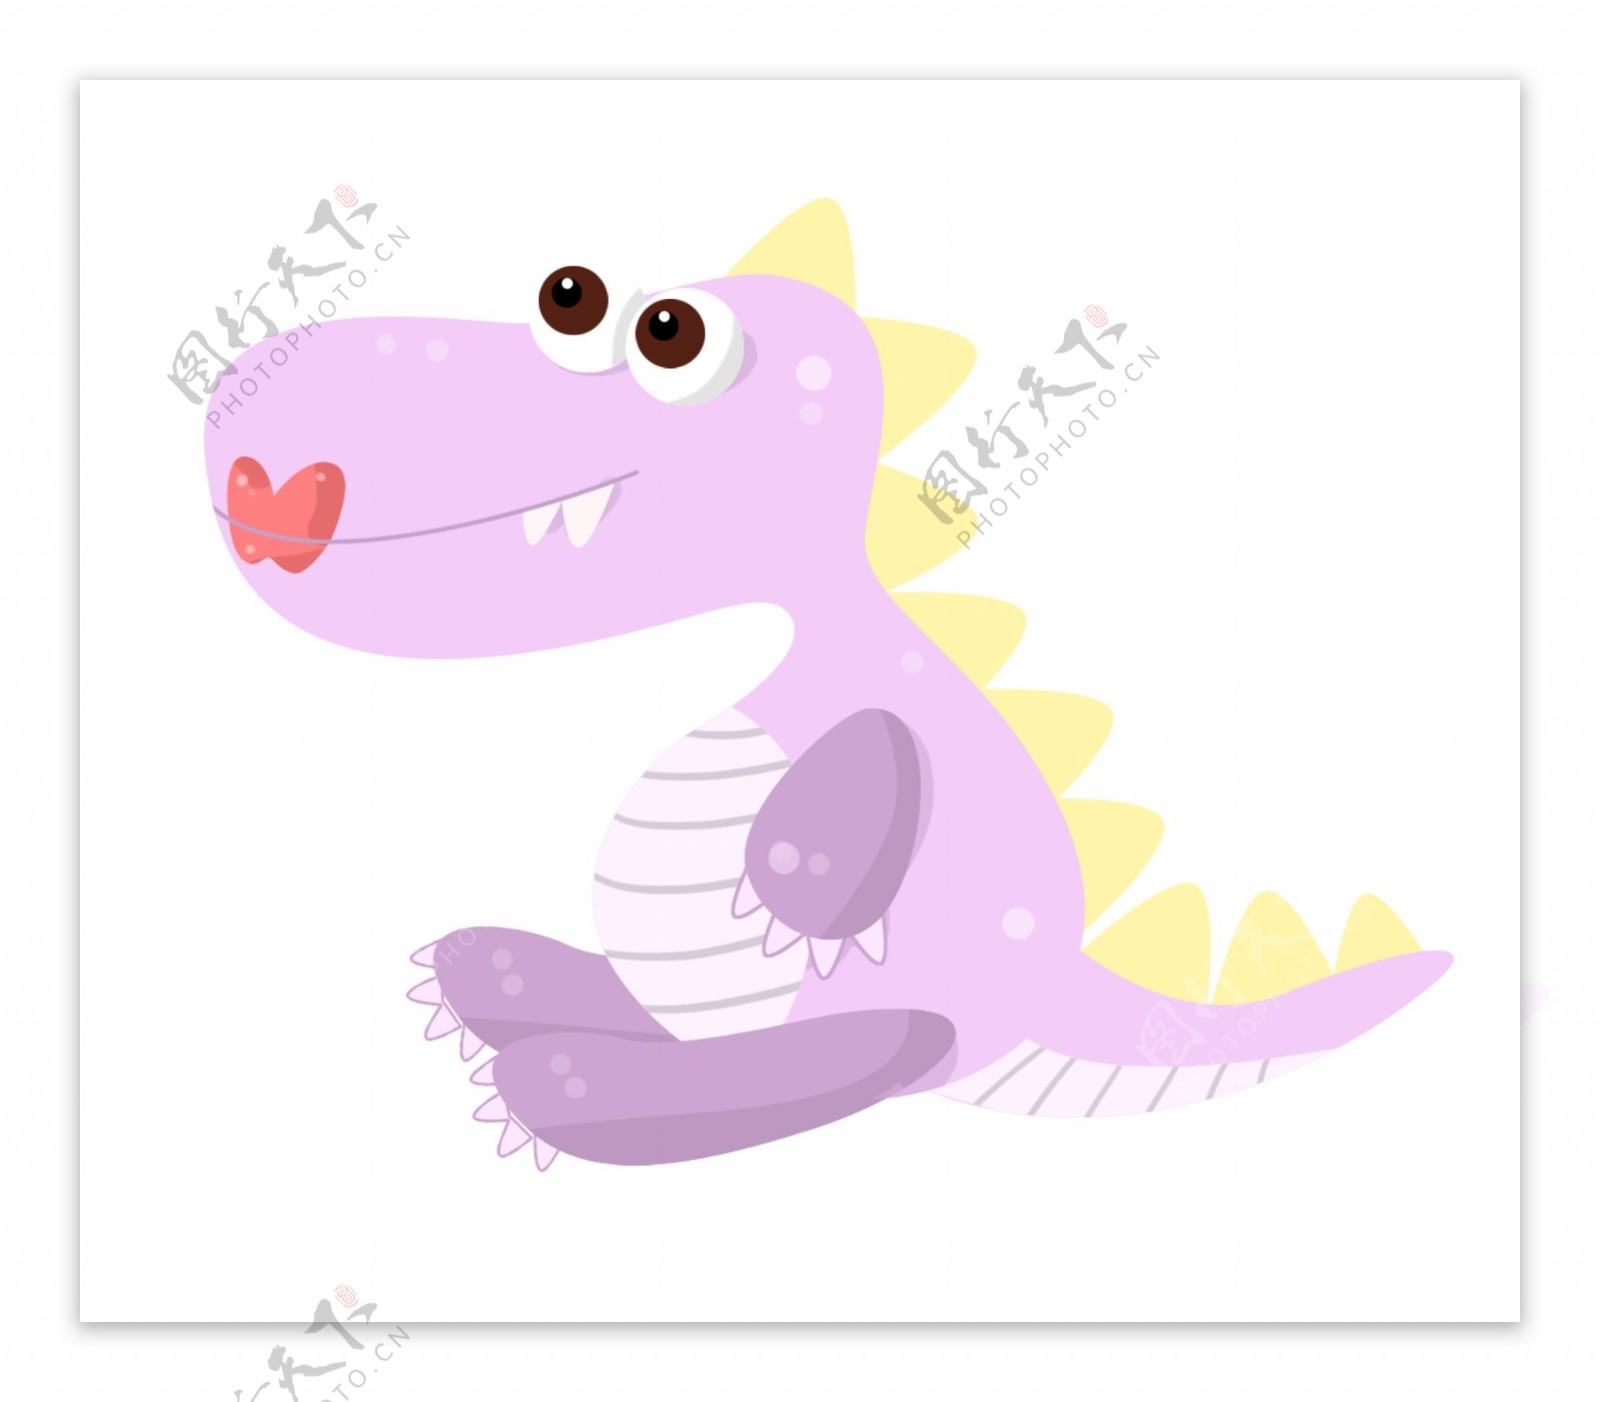 可爱的紫色恐龙插图